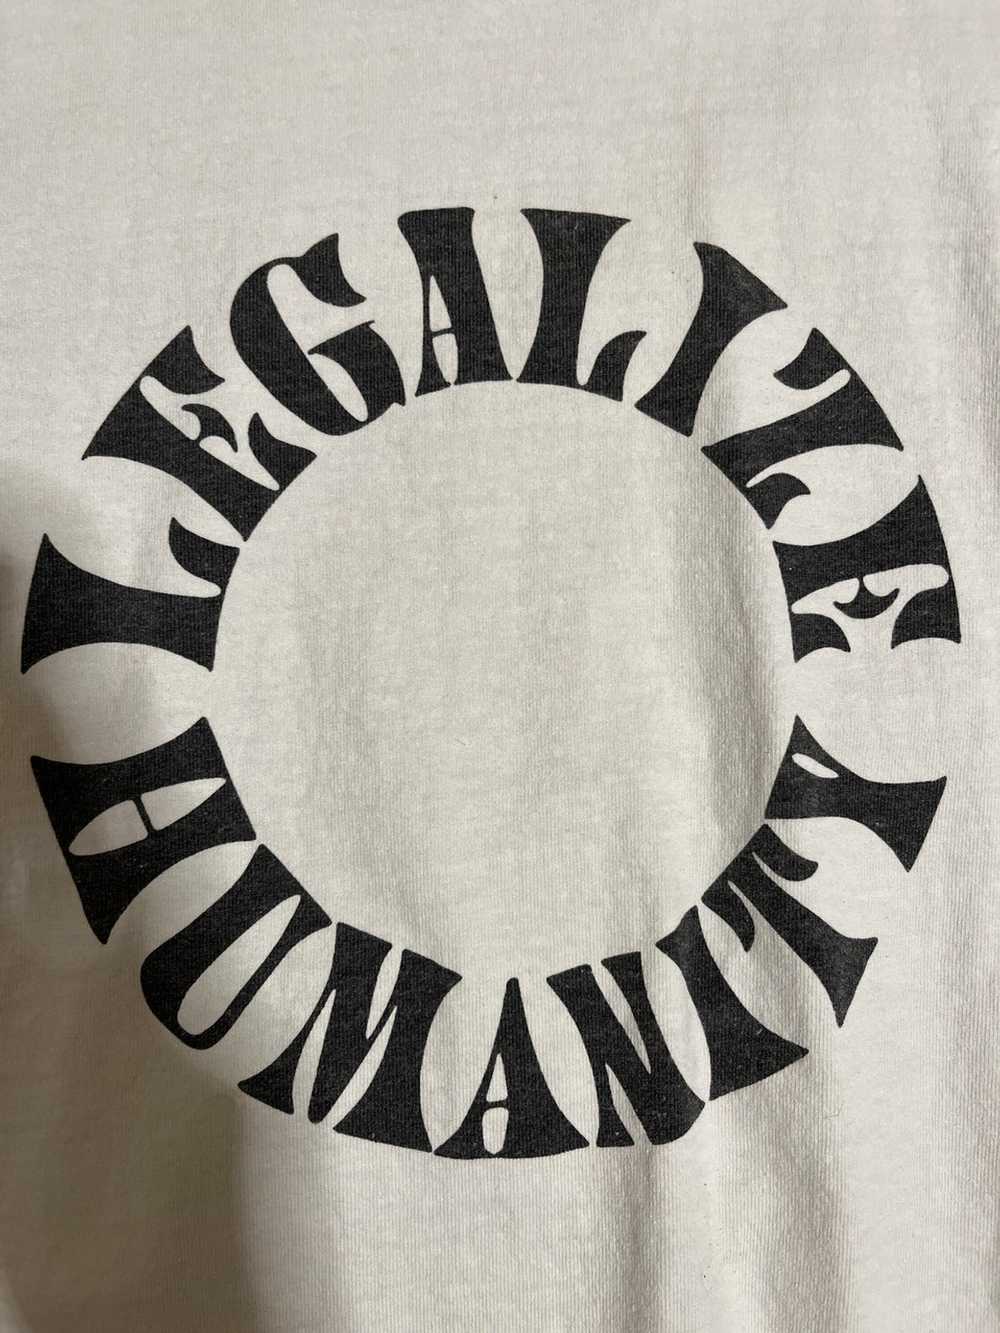 Vintage Old Pal “Legalize Humanity” T-shirt - image 2